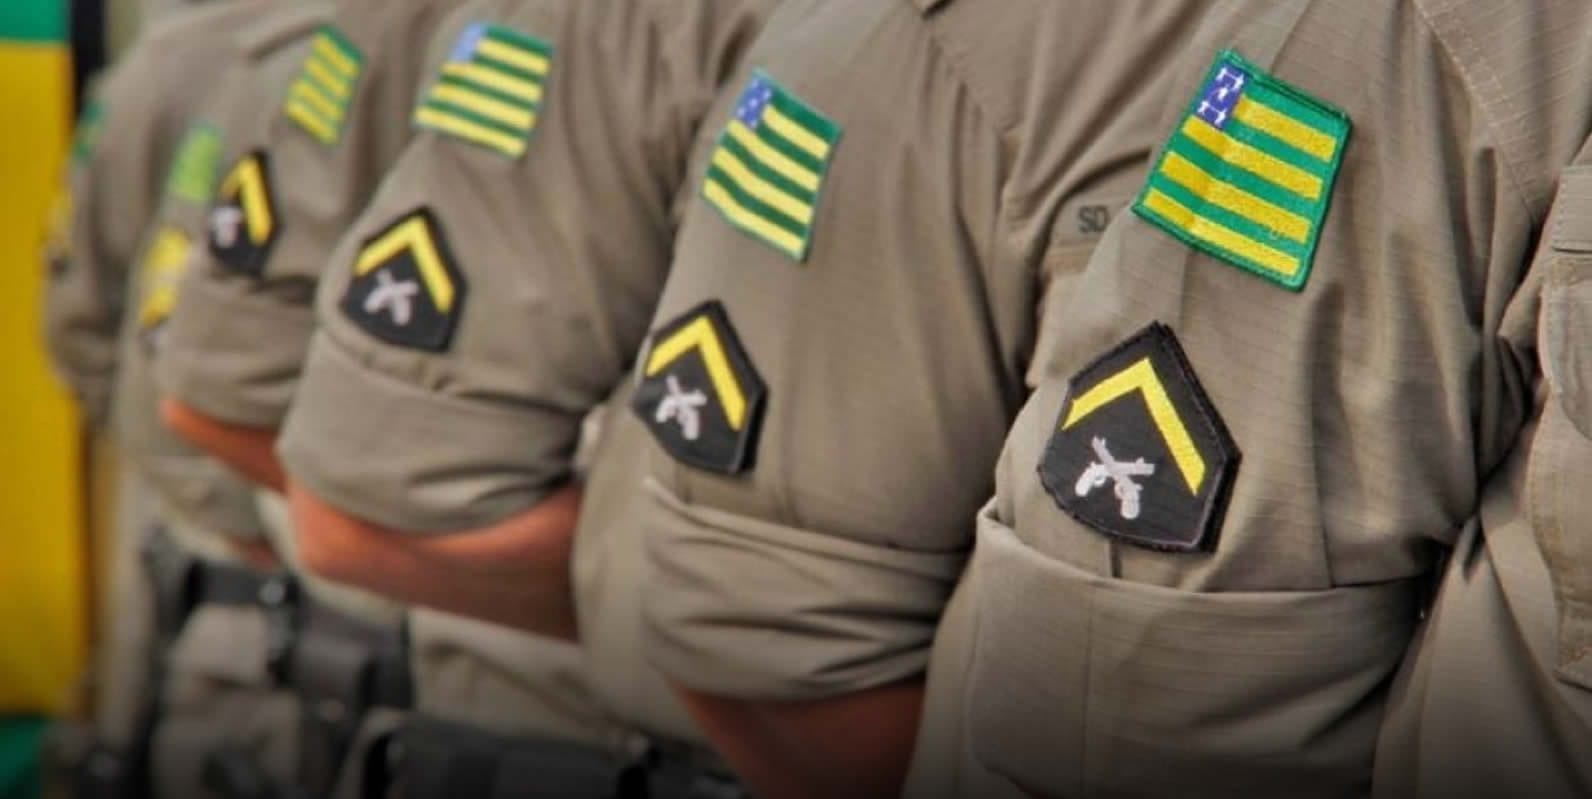 Sancionada lei que extingue terceira classe de policiais militares em Goiás